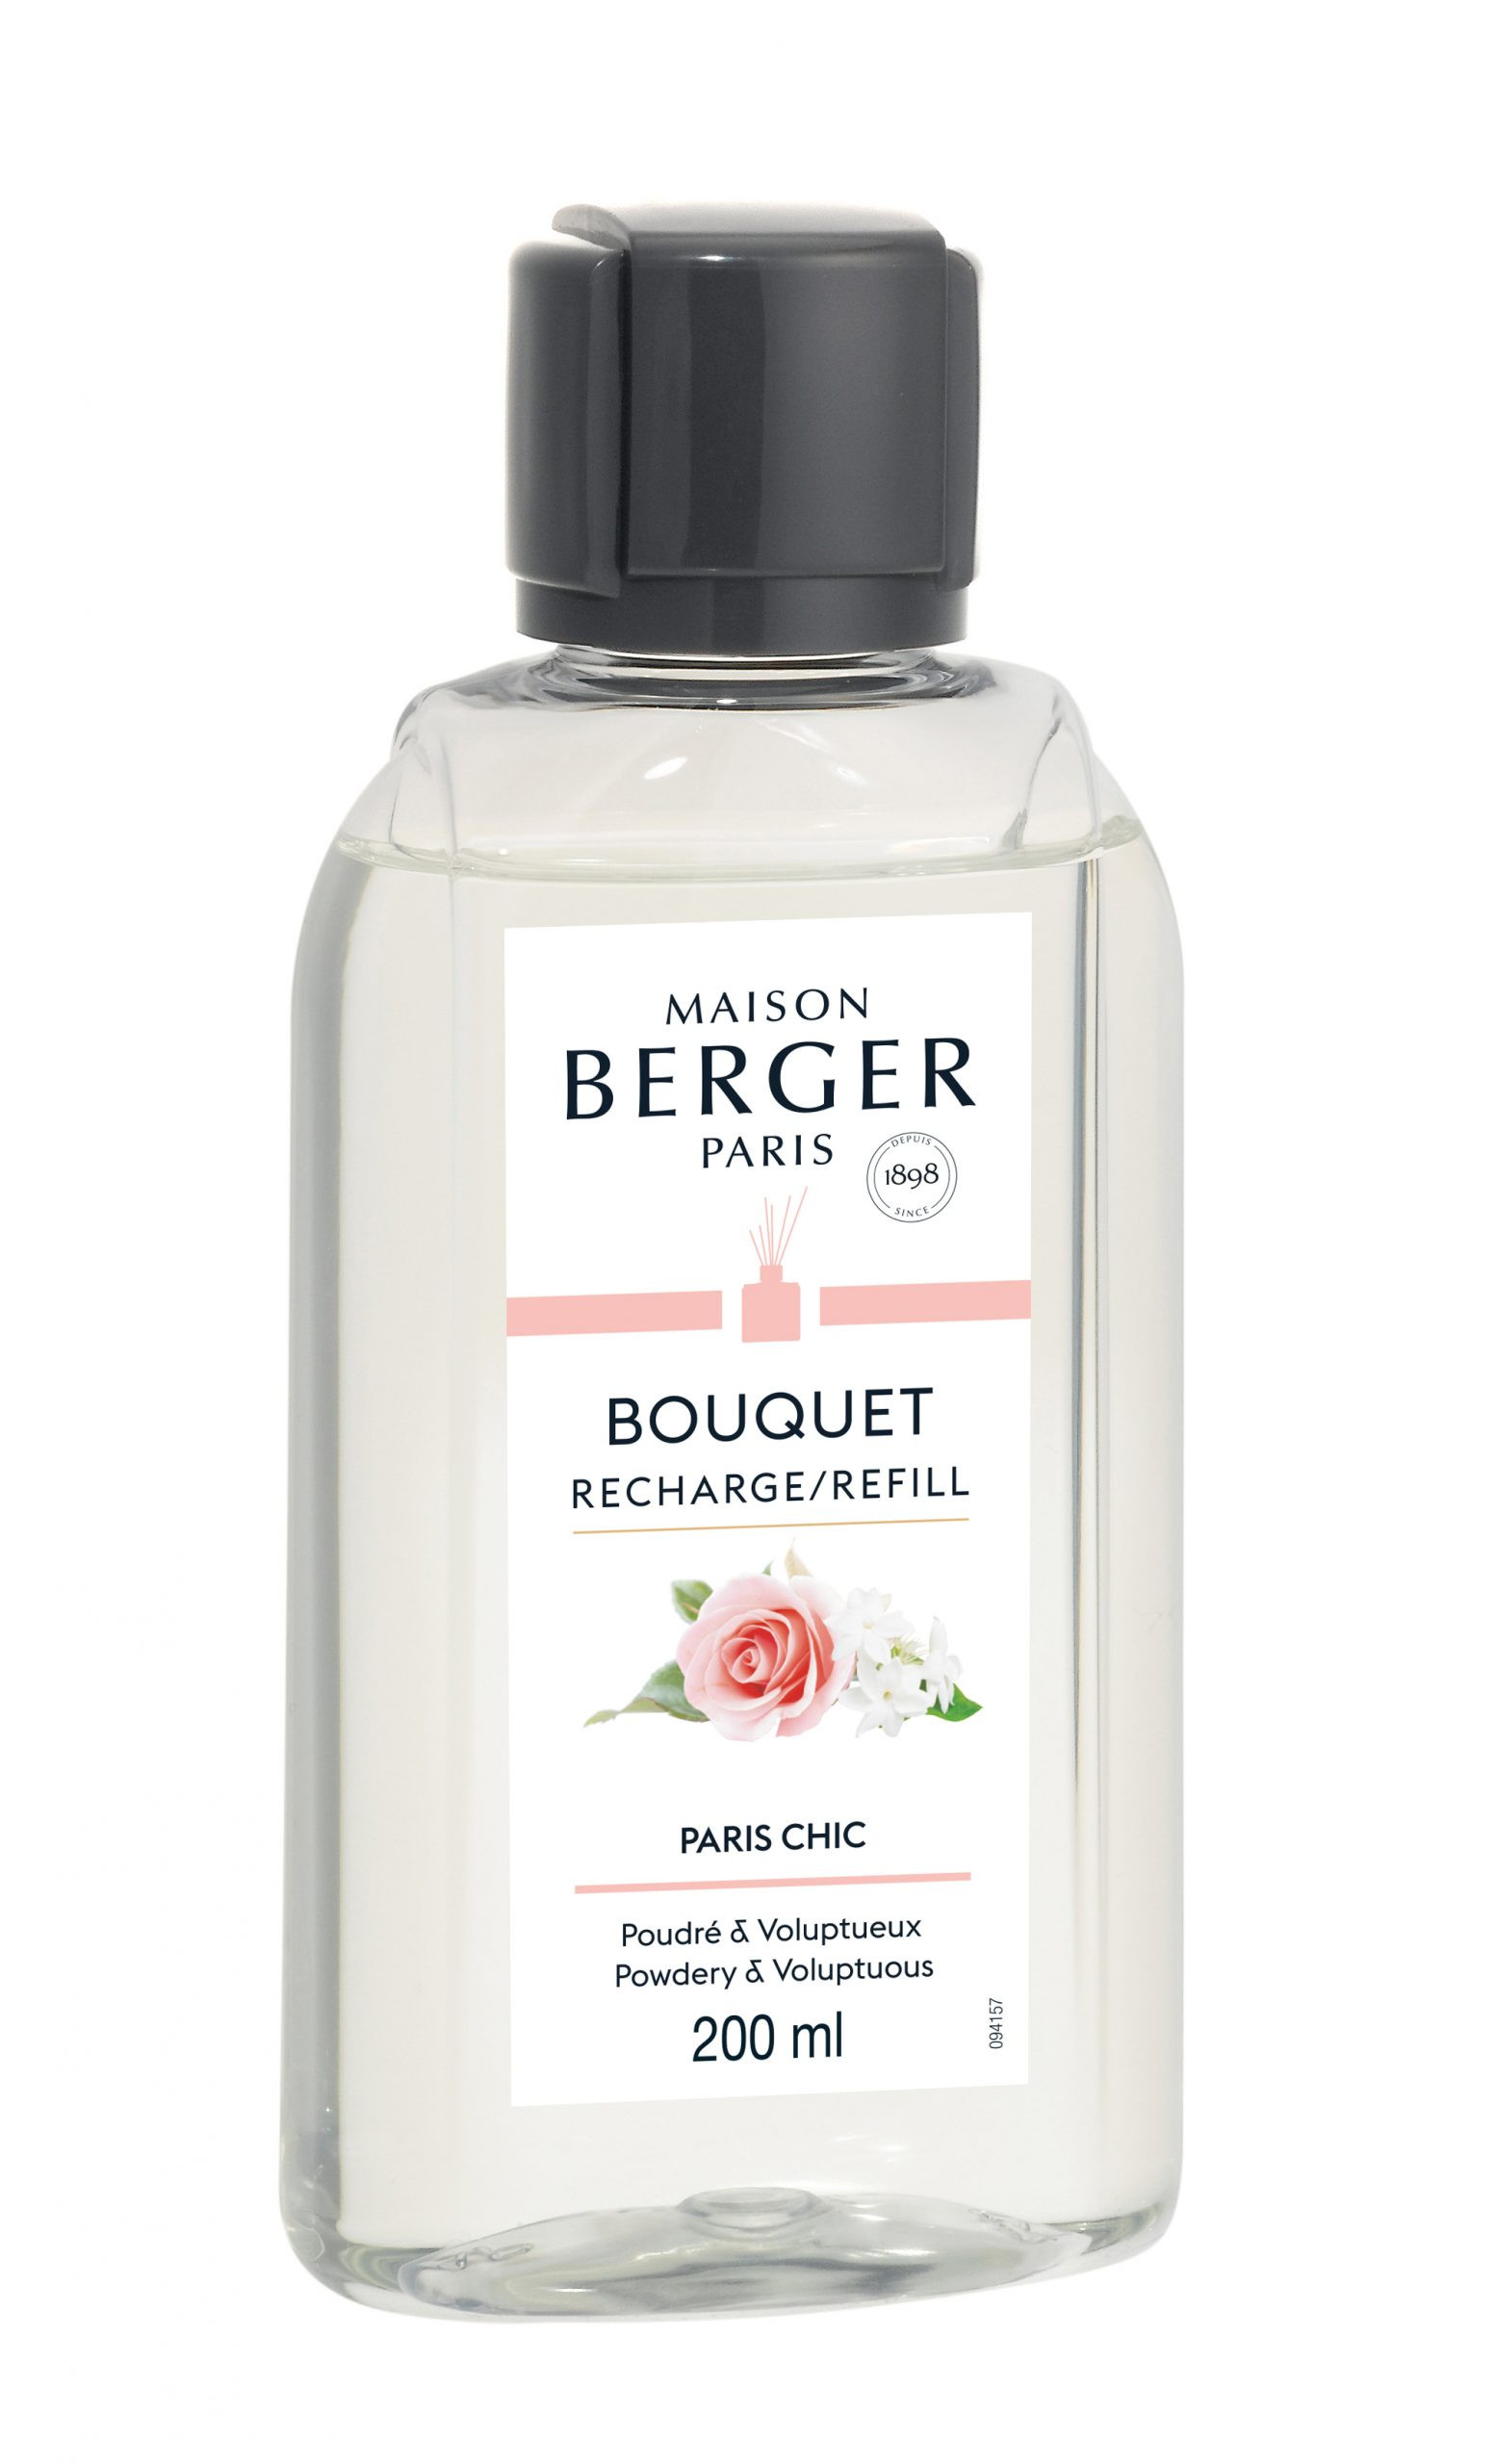 Maison Berger Paris - parfum geurstokjes - Paris Chic